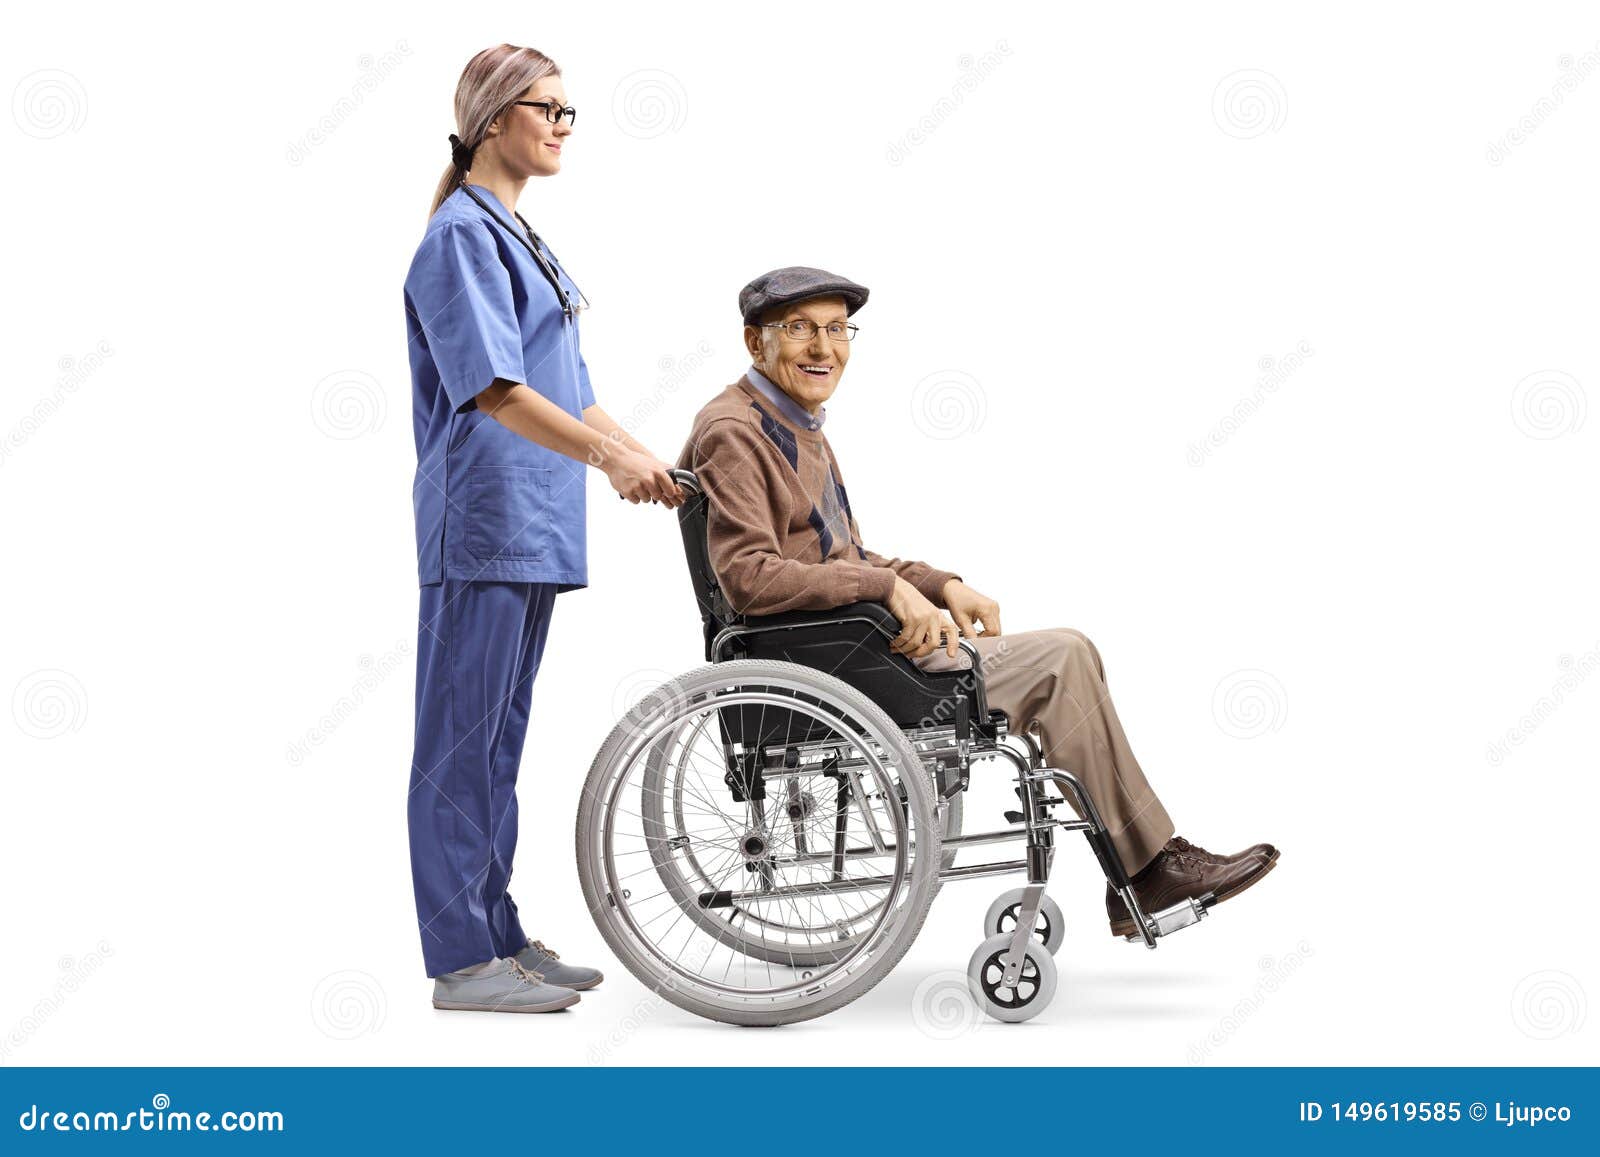 Nurse Pushing a Senior Man Sitting in a Wheelchair Stock Image - Image ...